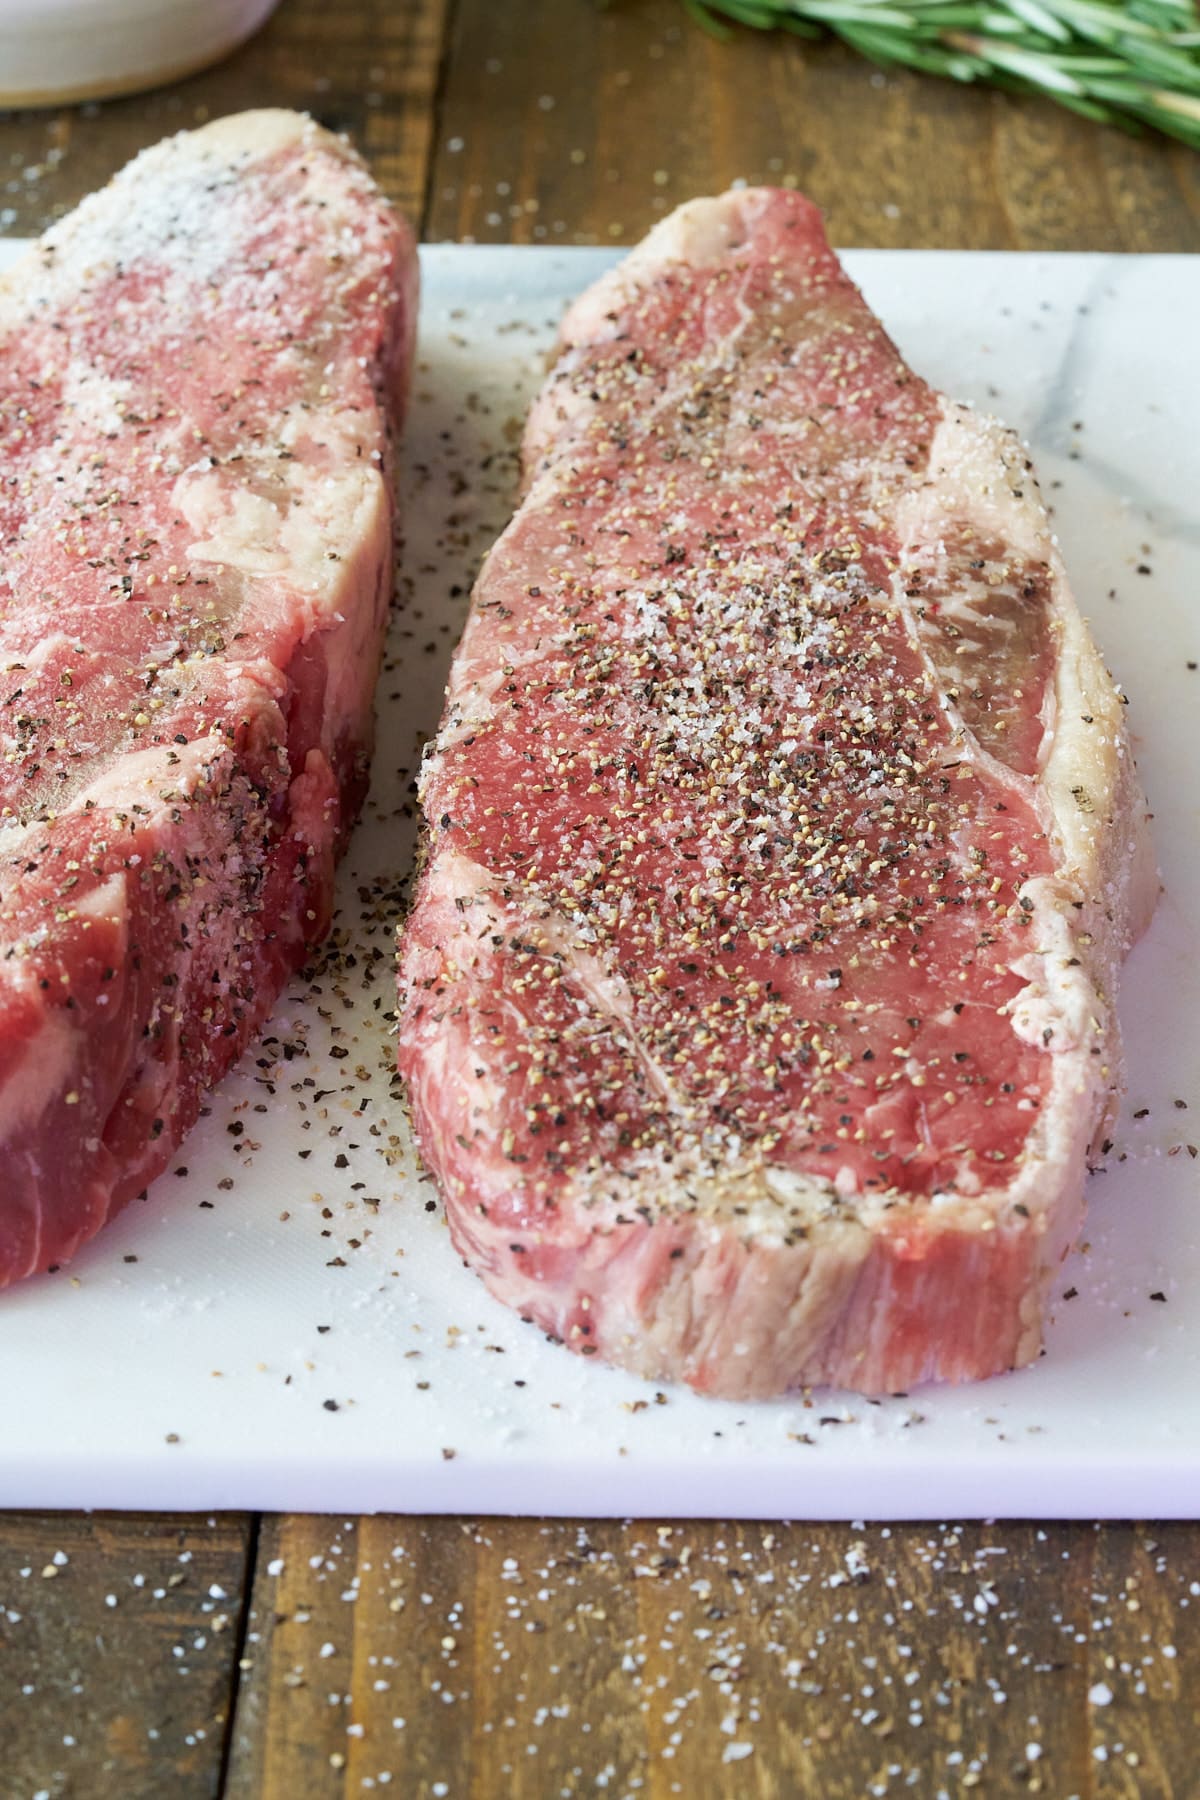 Two seasoned sirloin steaks on a cutting board.